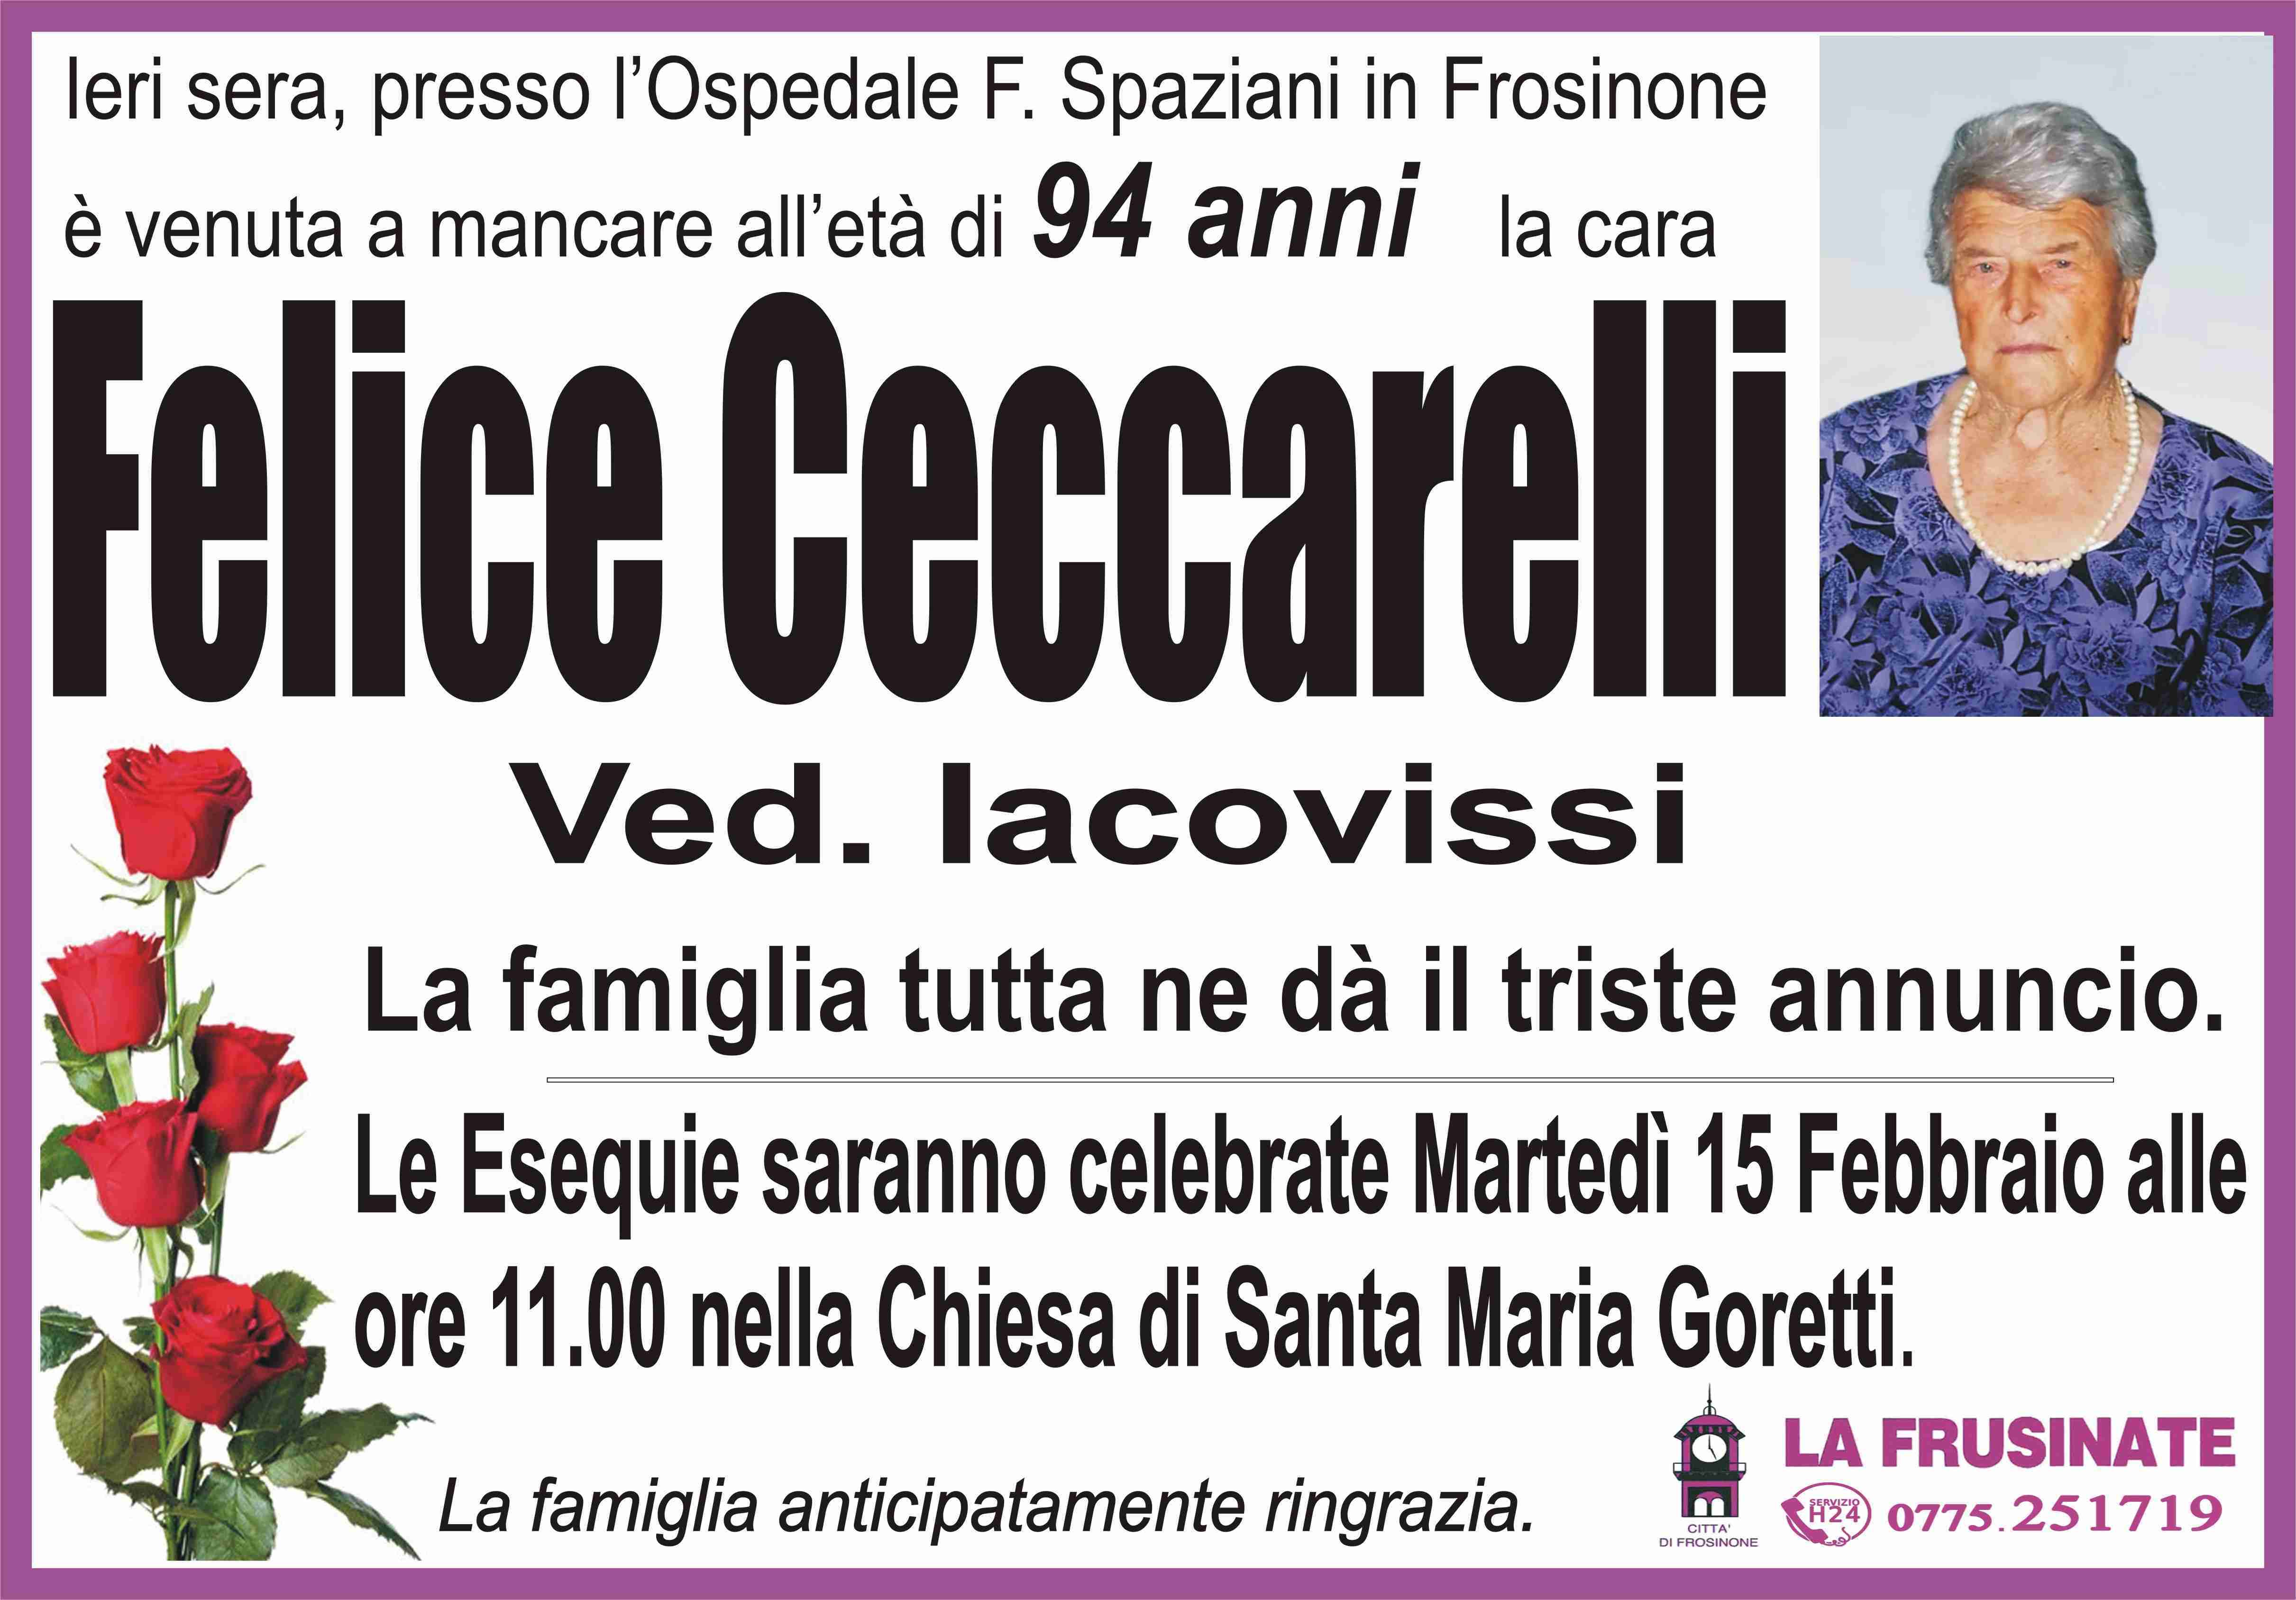 Felice Ceccarelli